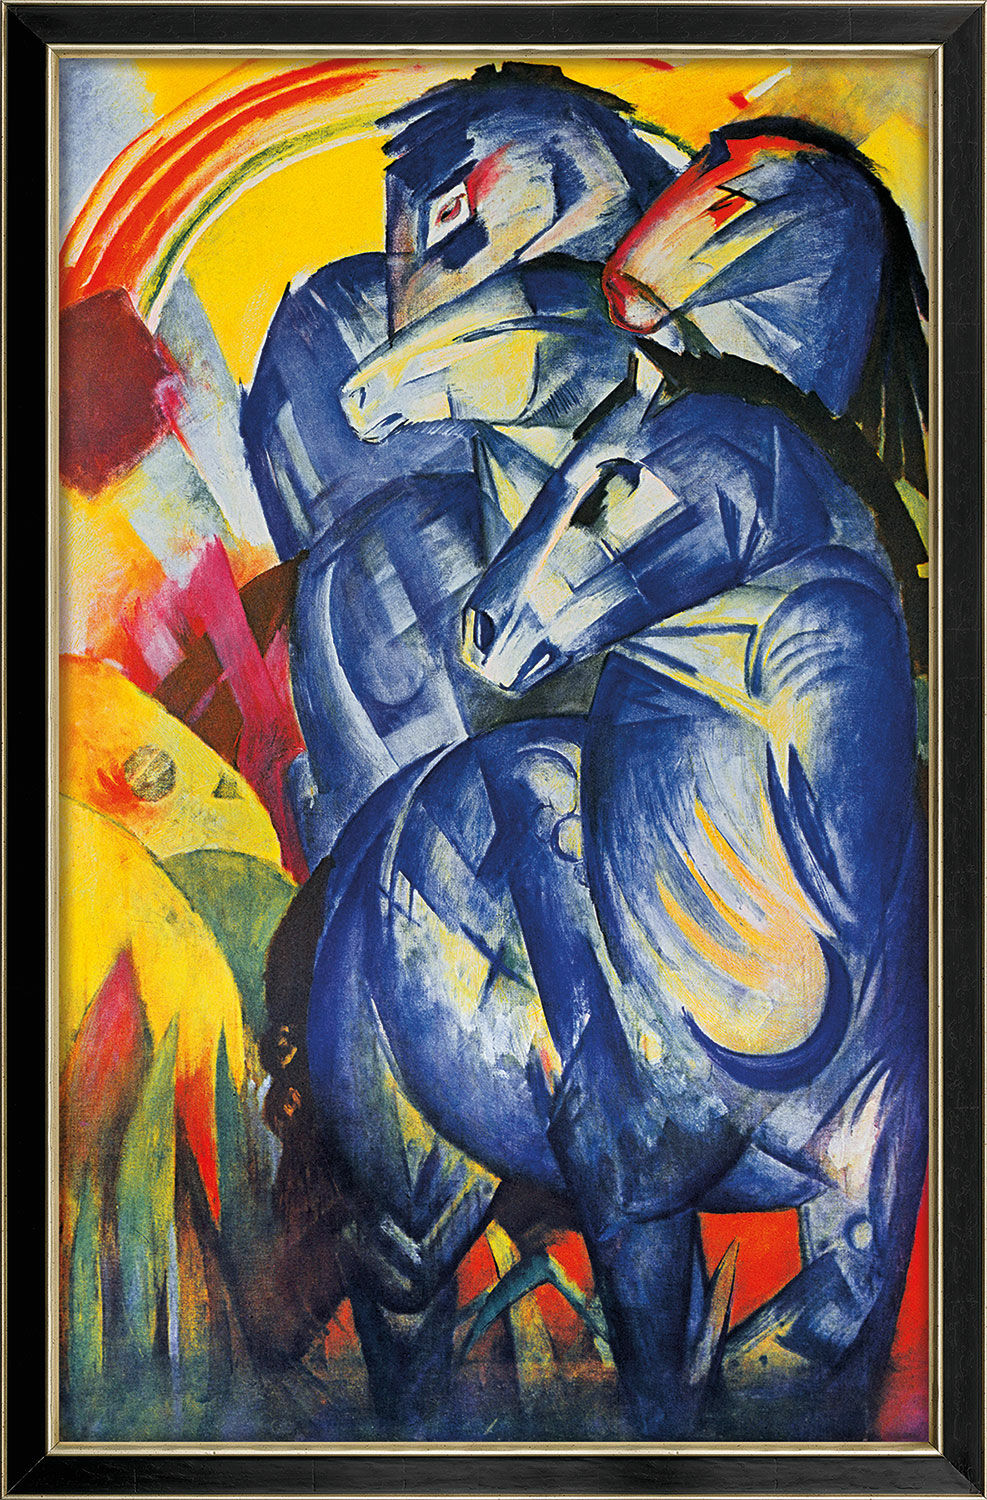 Bild "Turm der blauen Pferde" (1913), gerahmt von Franz Marc